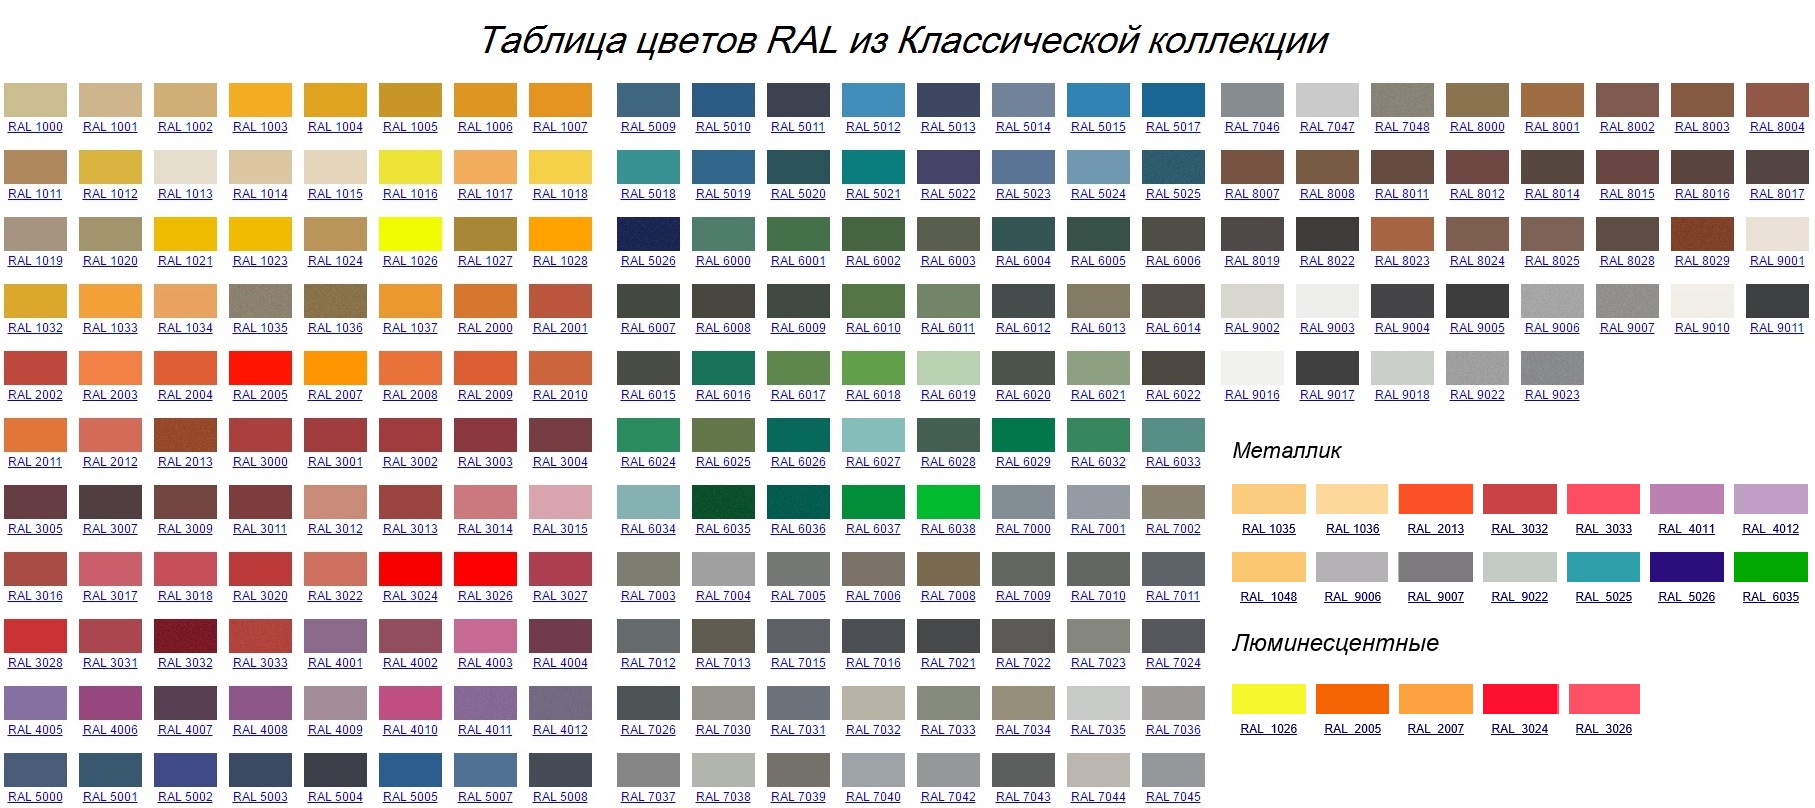 Таблица цветов RAL из Классической коллекции